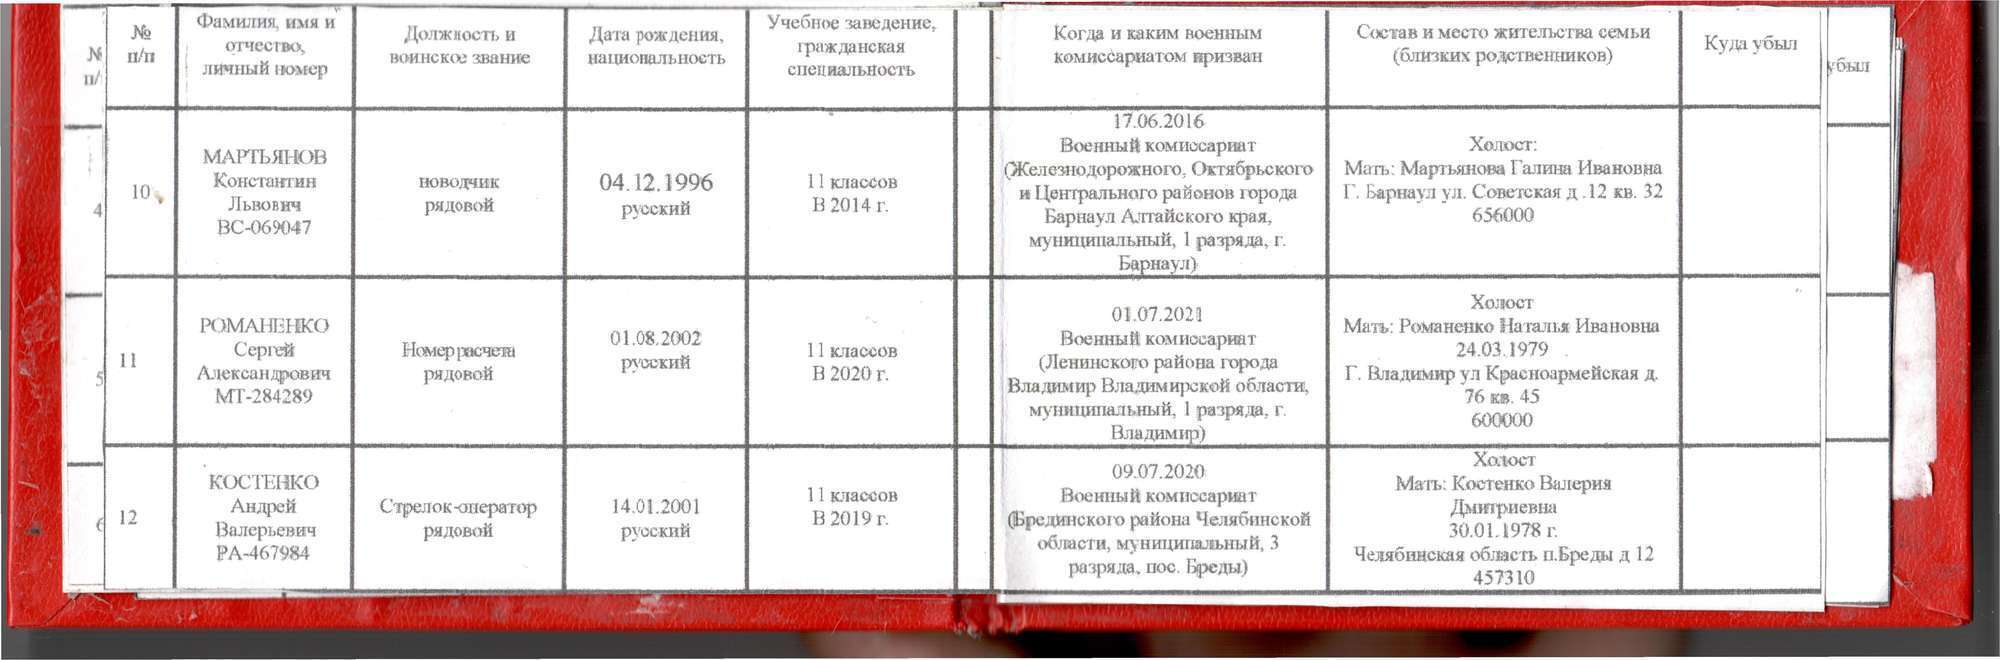 У списках також зазначені персональні  дані членів сімей катів українського народу